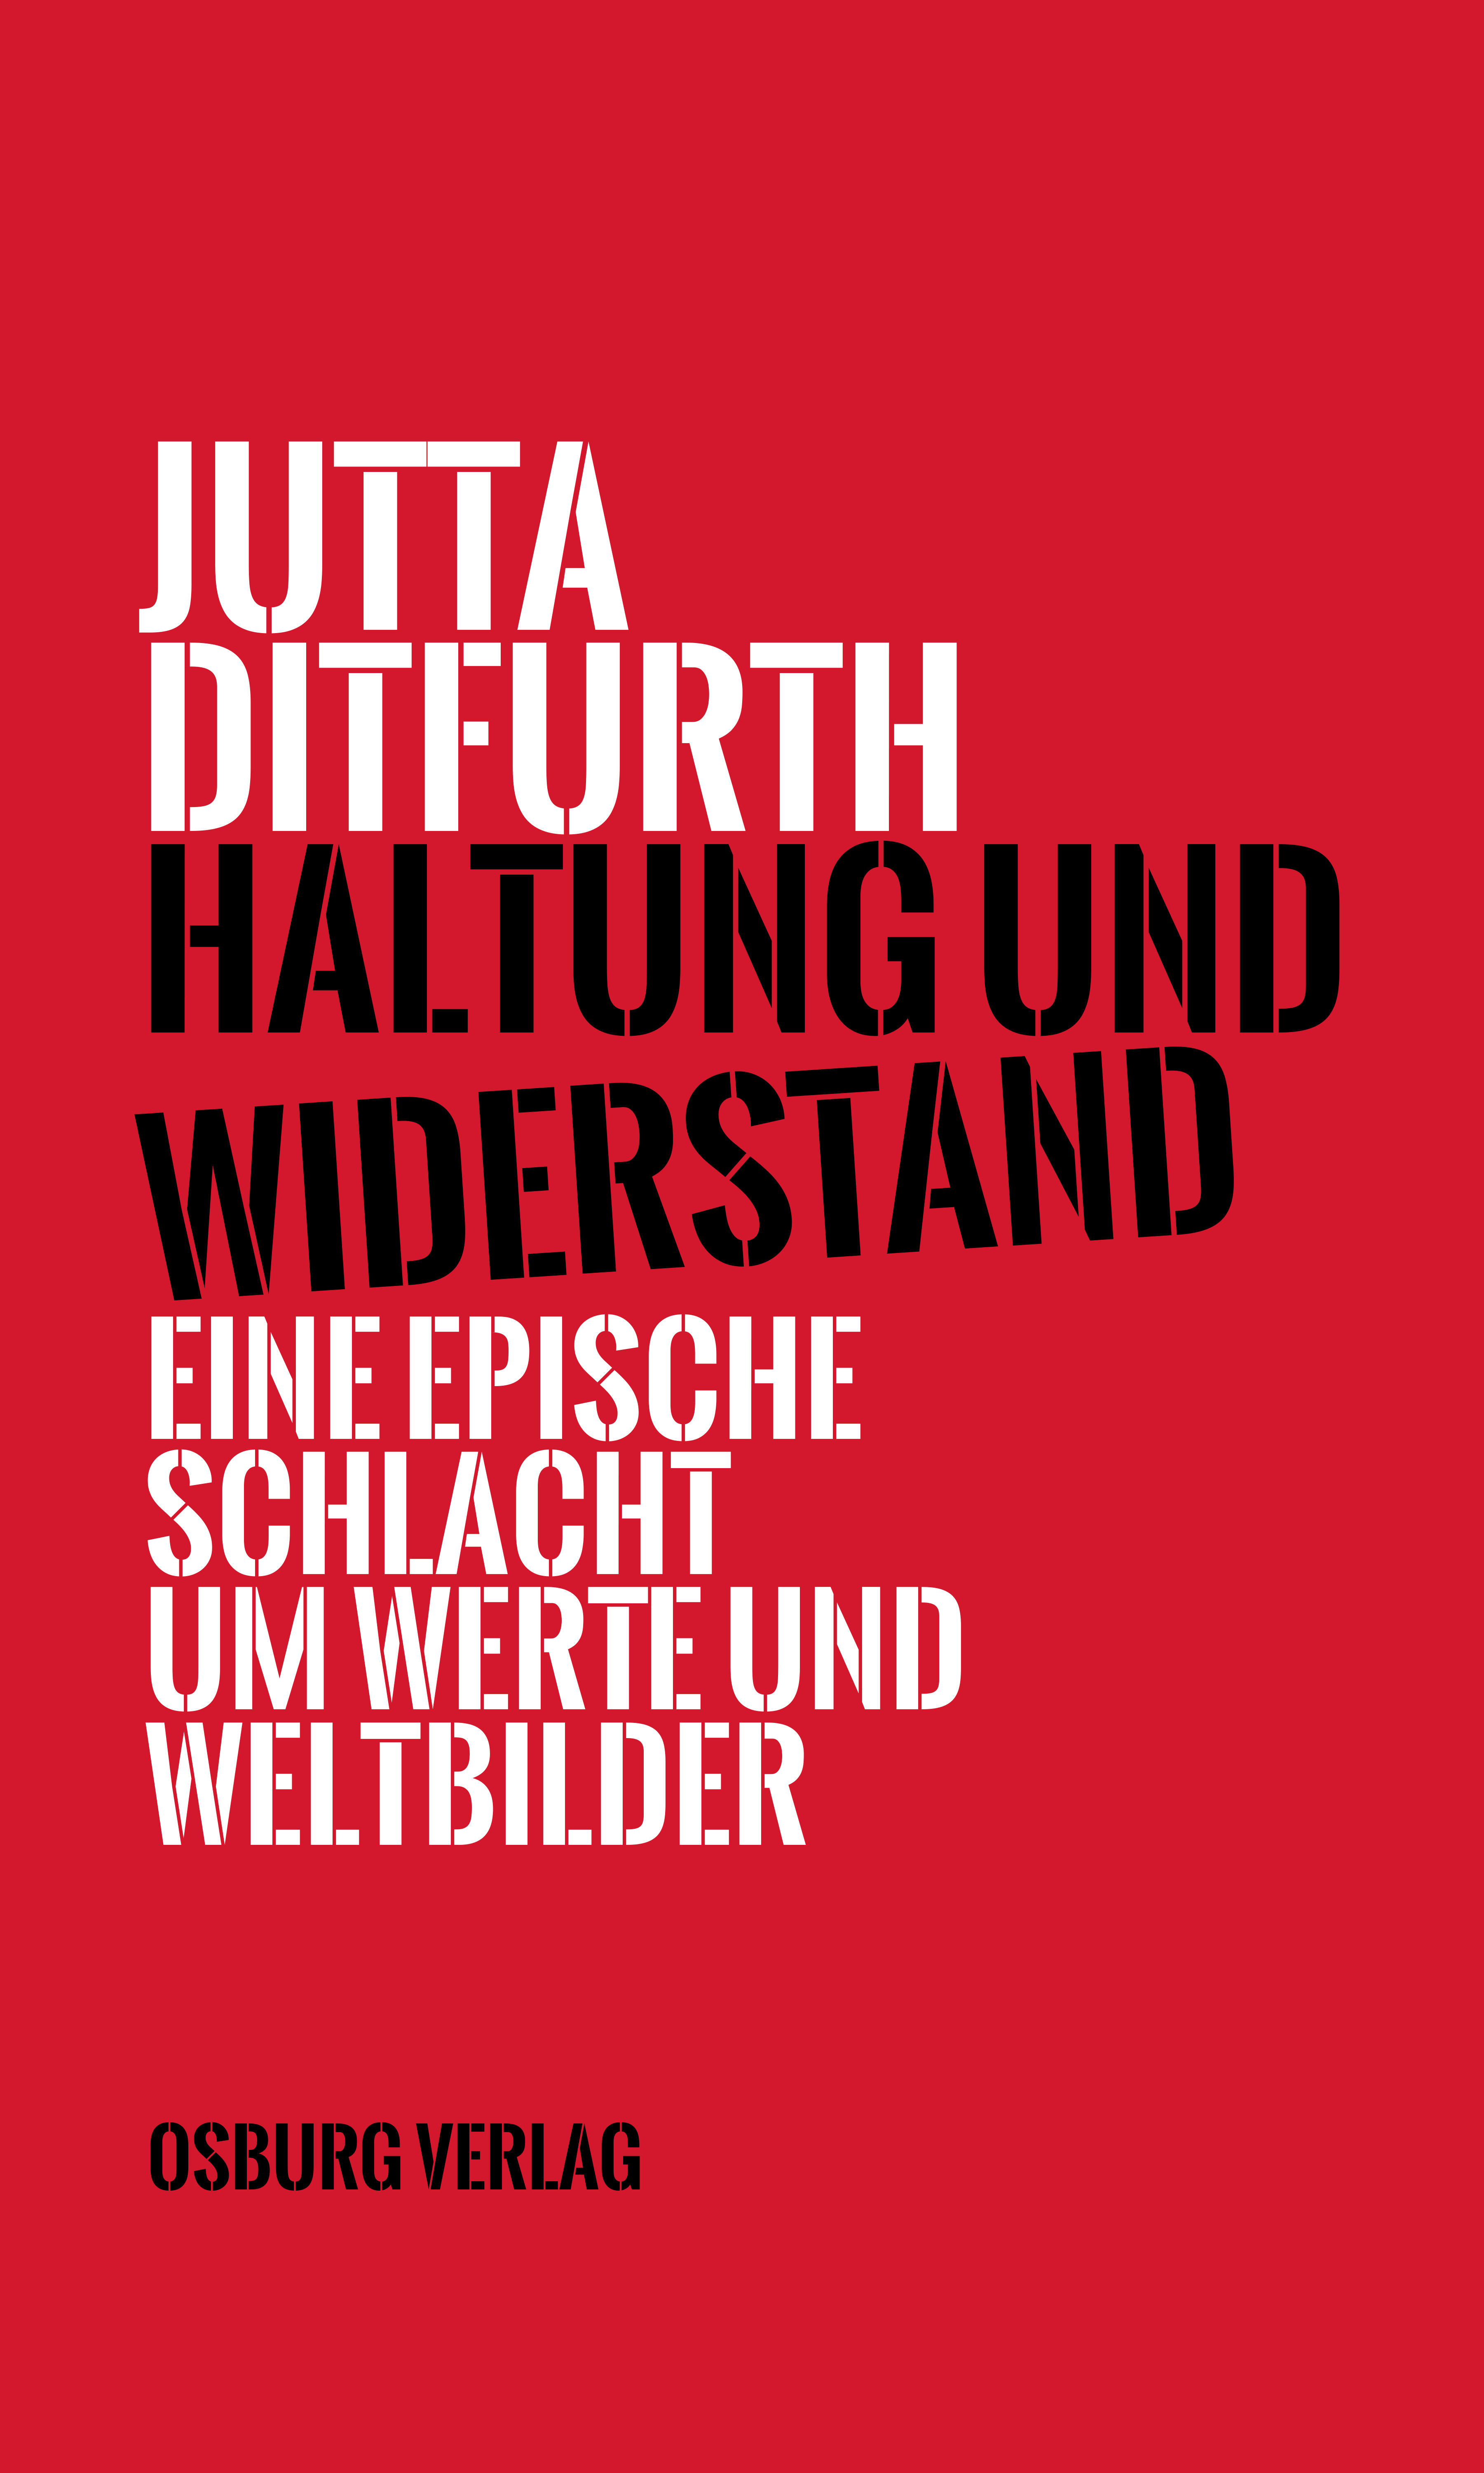 Titelbild Jutta Ditfurth:
Jutta Ditfurth
Haltung und Widerstand
Eine epische Schlacht um Werte und Weltbilder